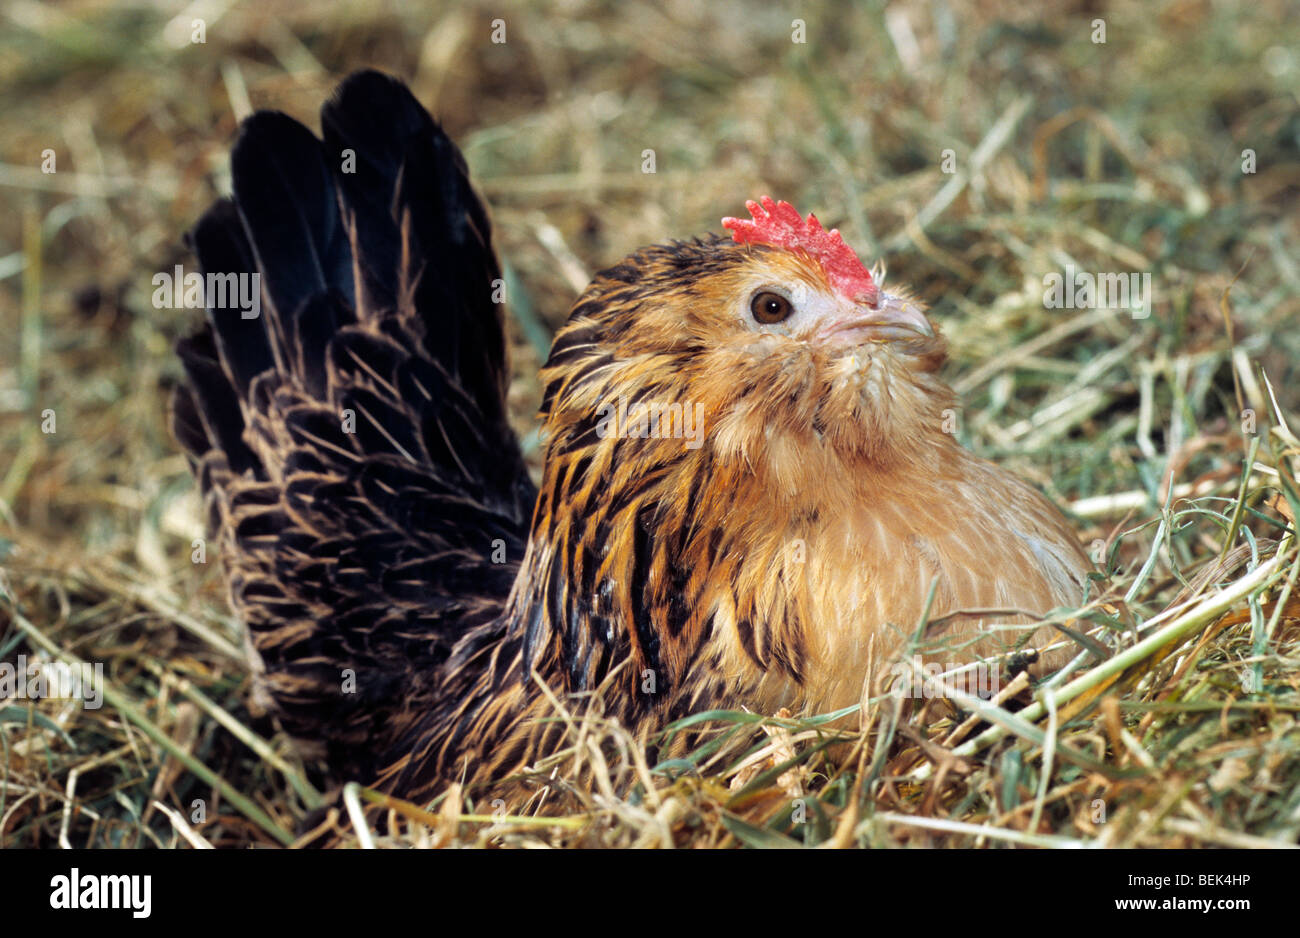 Belgian Bantam chicken on nest Stock Photo